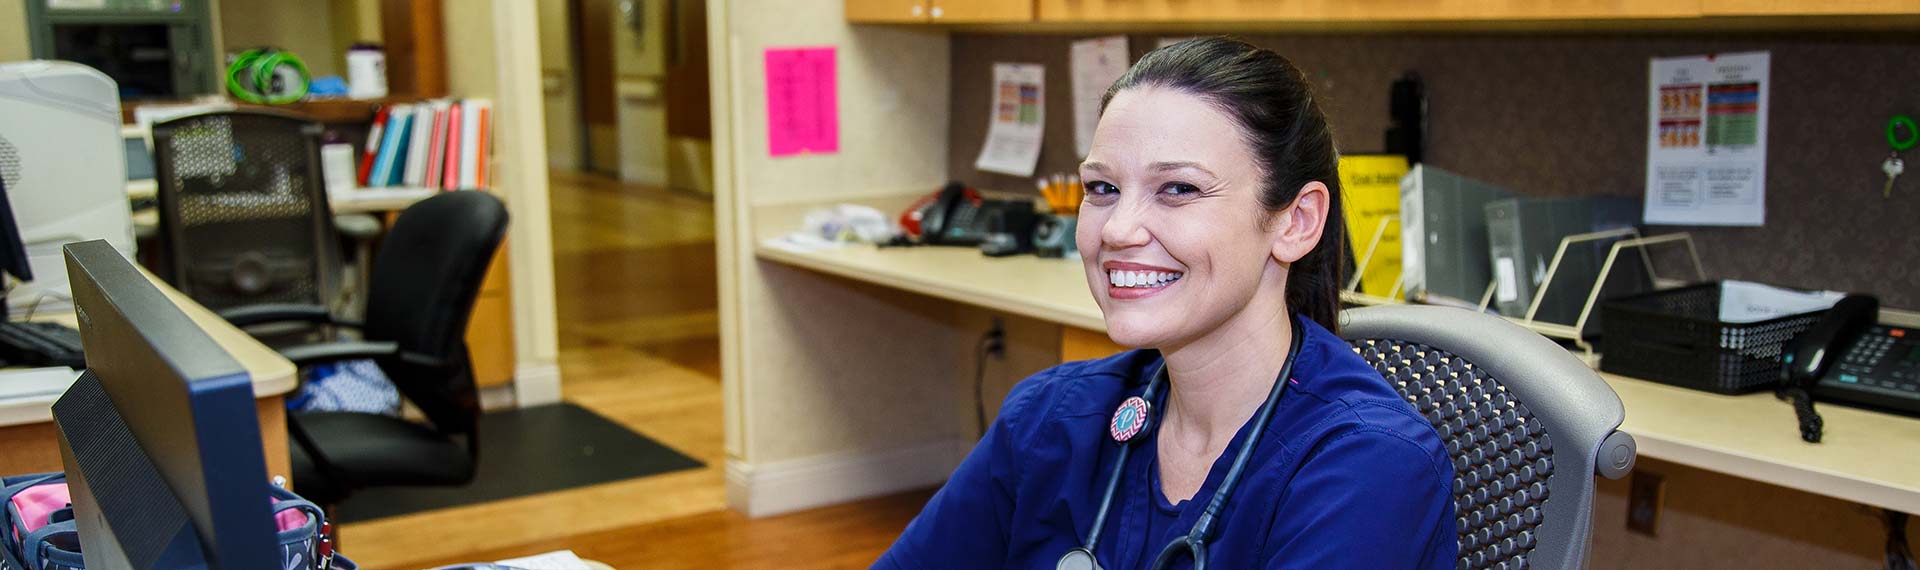 nurse at desk smiling